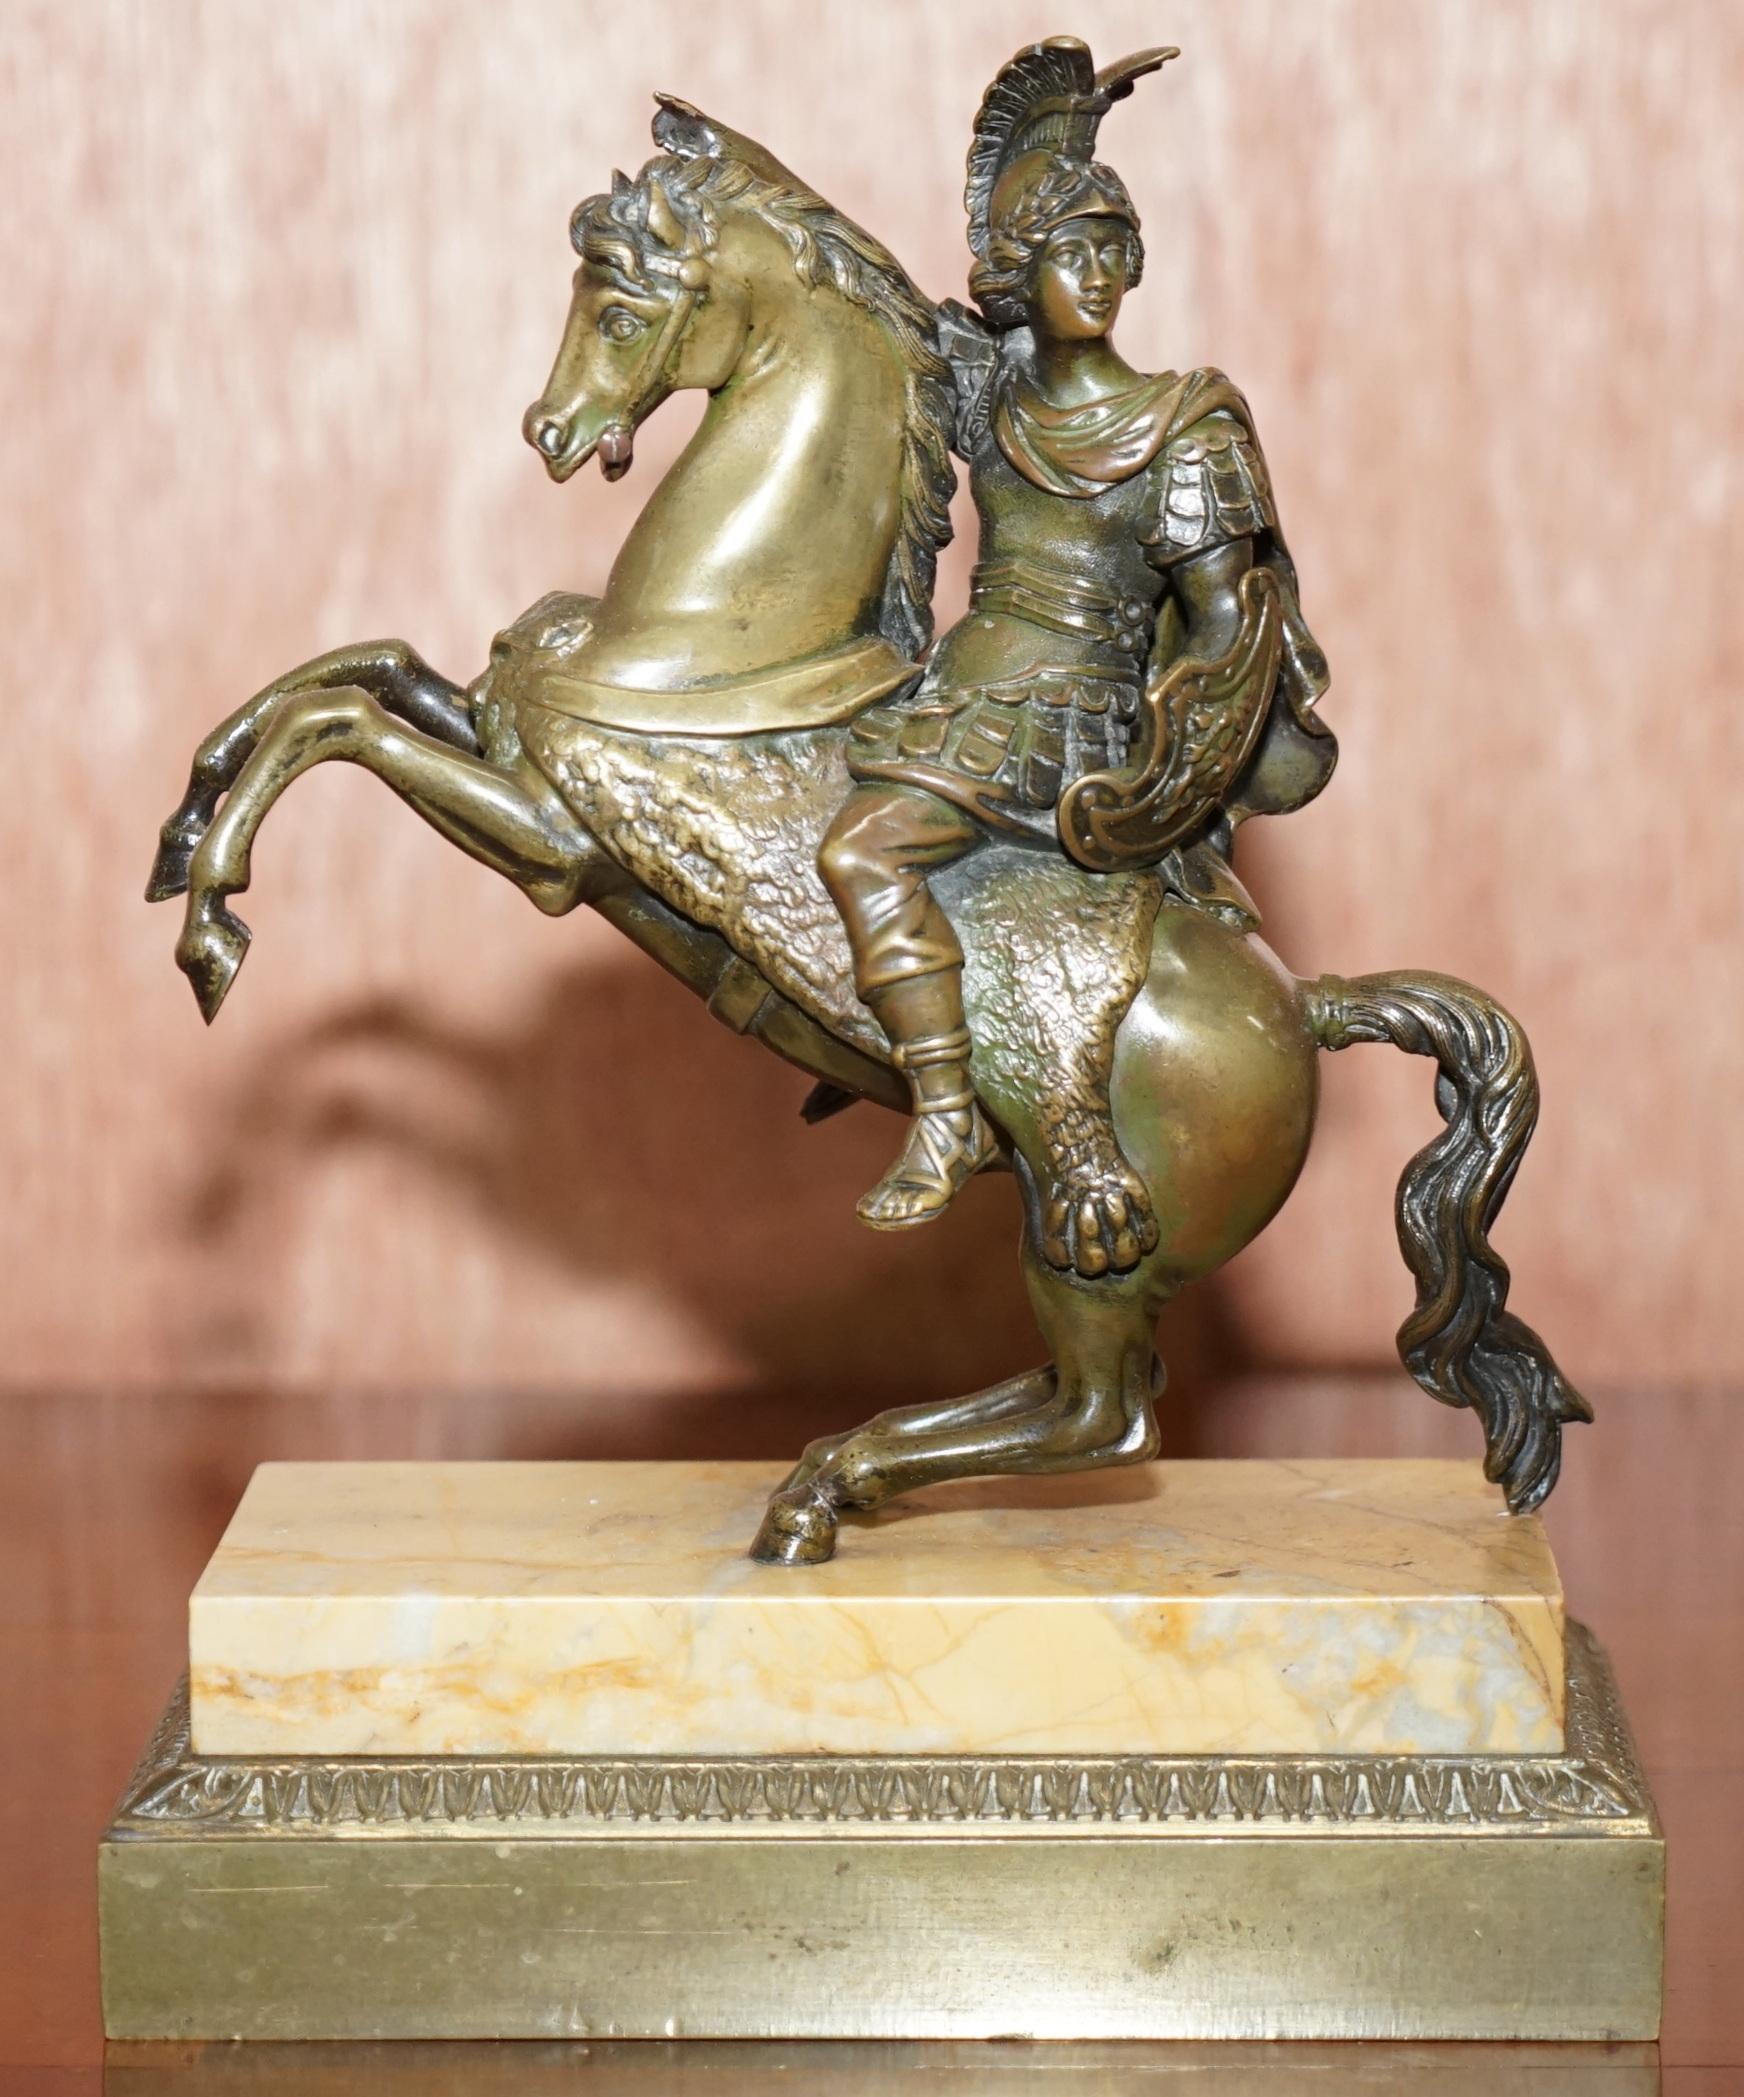 Nous sommes ravis de proposer à la vente cette paire de bronzes équestres originaux du XIXe siècle représentant un cosaque russe et un soldat romain à cheval.

Il s'agit d'une belle paire bien fabriquée, assise sur des bases en marbre. Il est fort